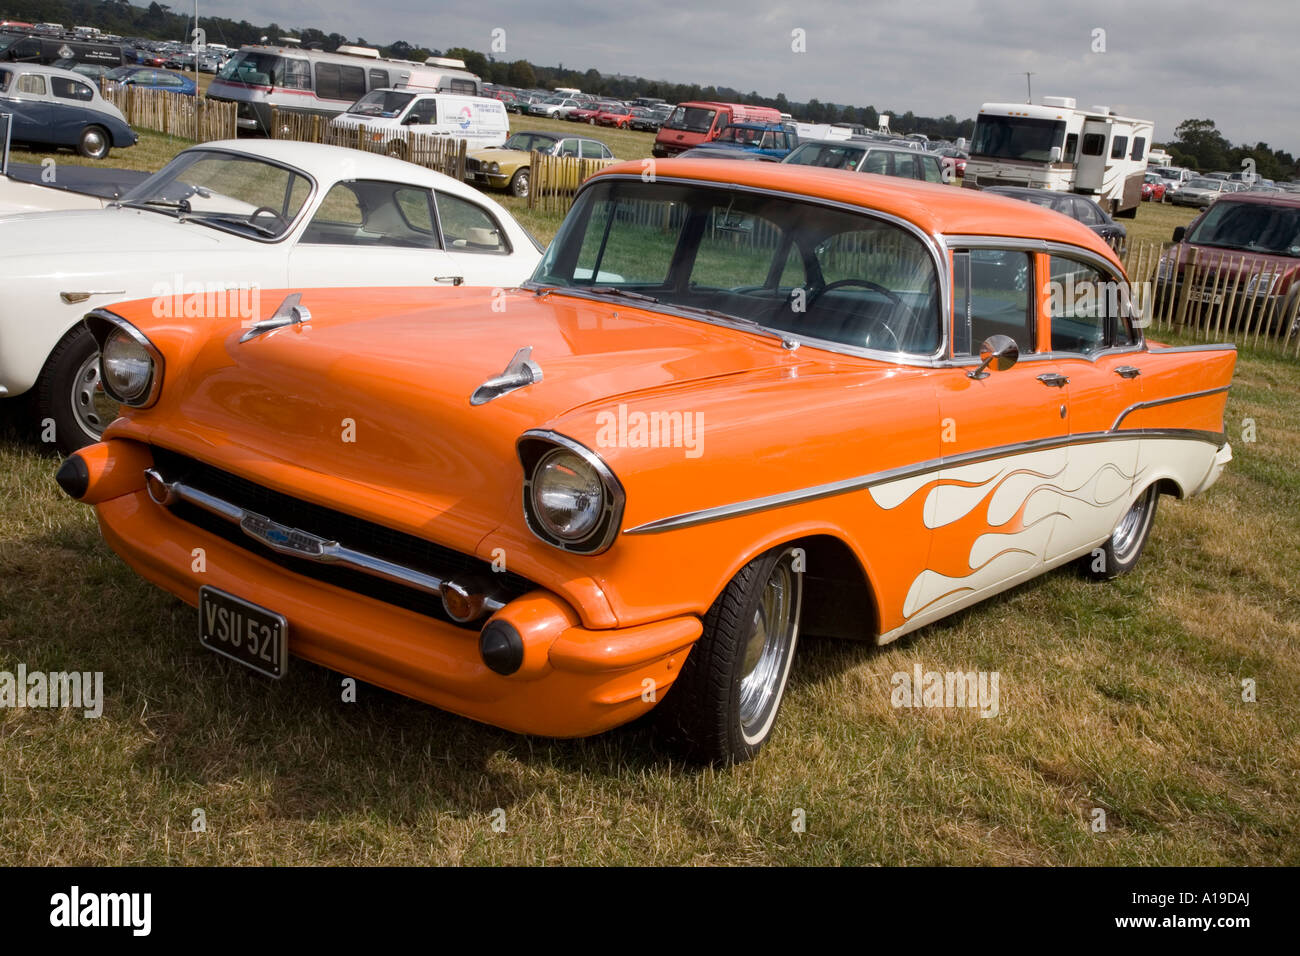 1957 Chevrolet Belair, orange and cream 4 door saloon. Goodwood Motor Circuit, Sussex, UK. Stock Photo